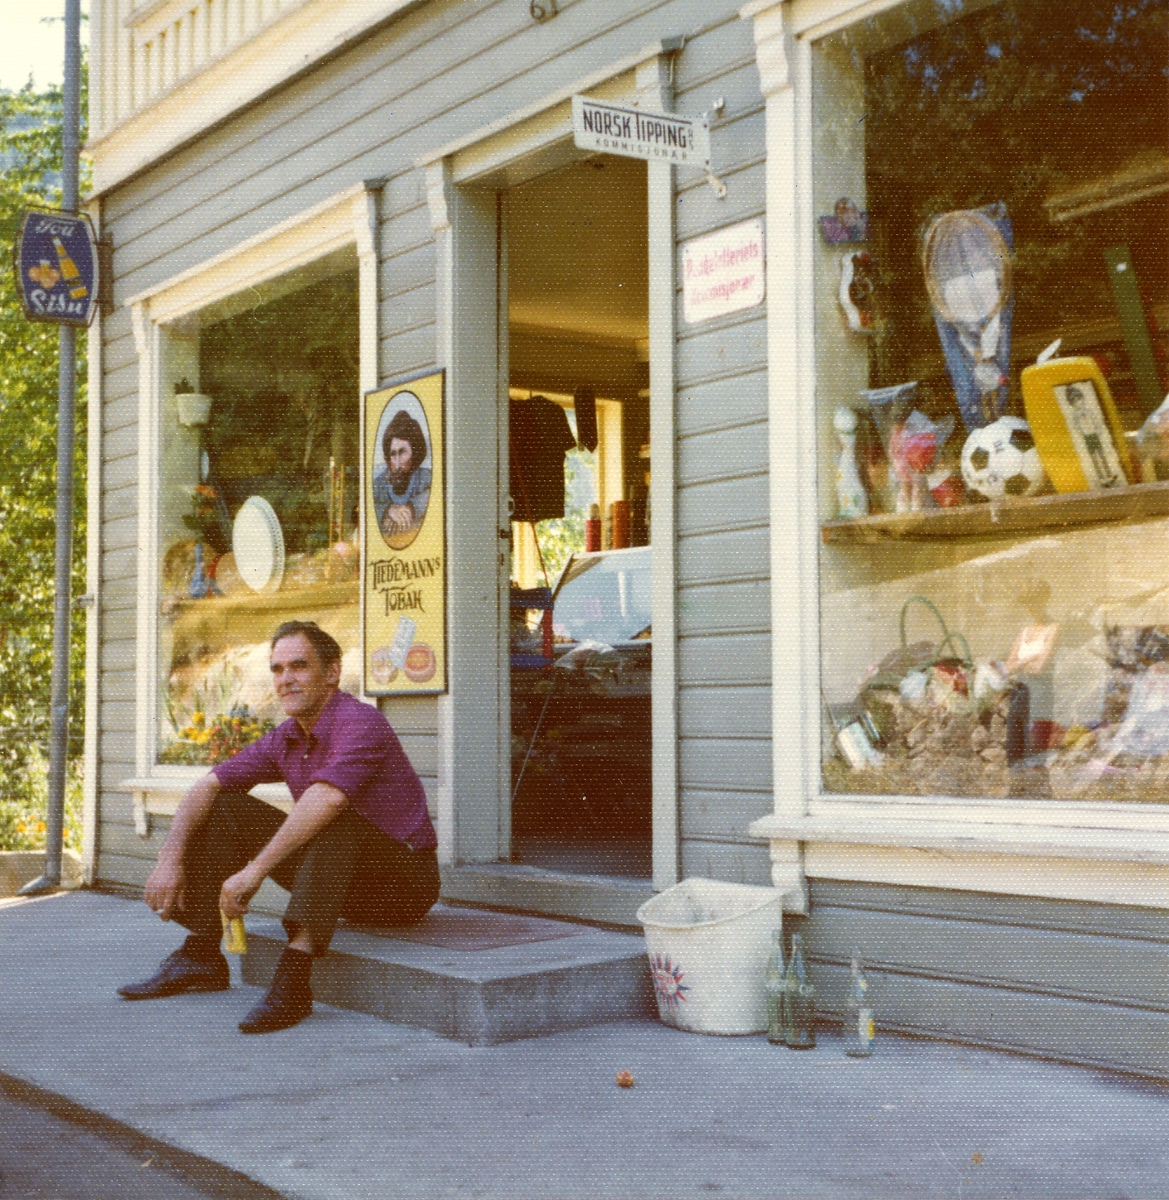 En mann sitter utenfor en butikk og røyker en sigarett.